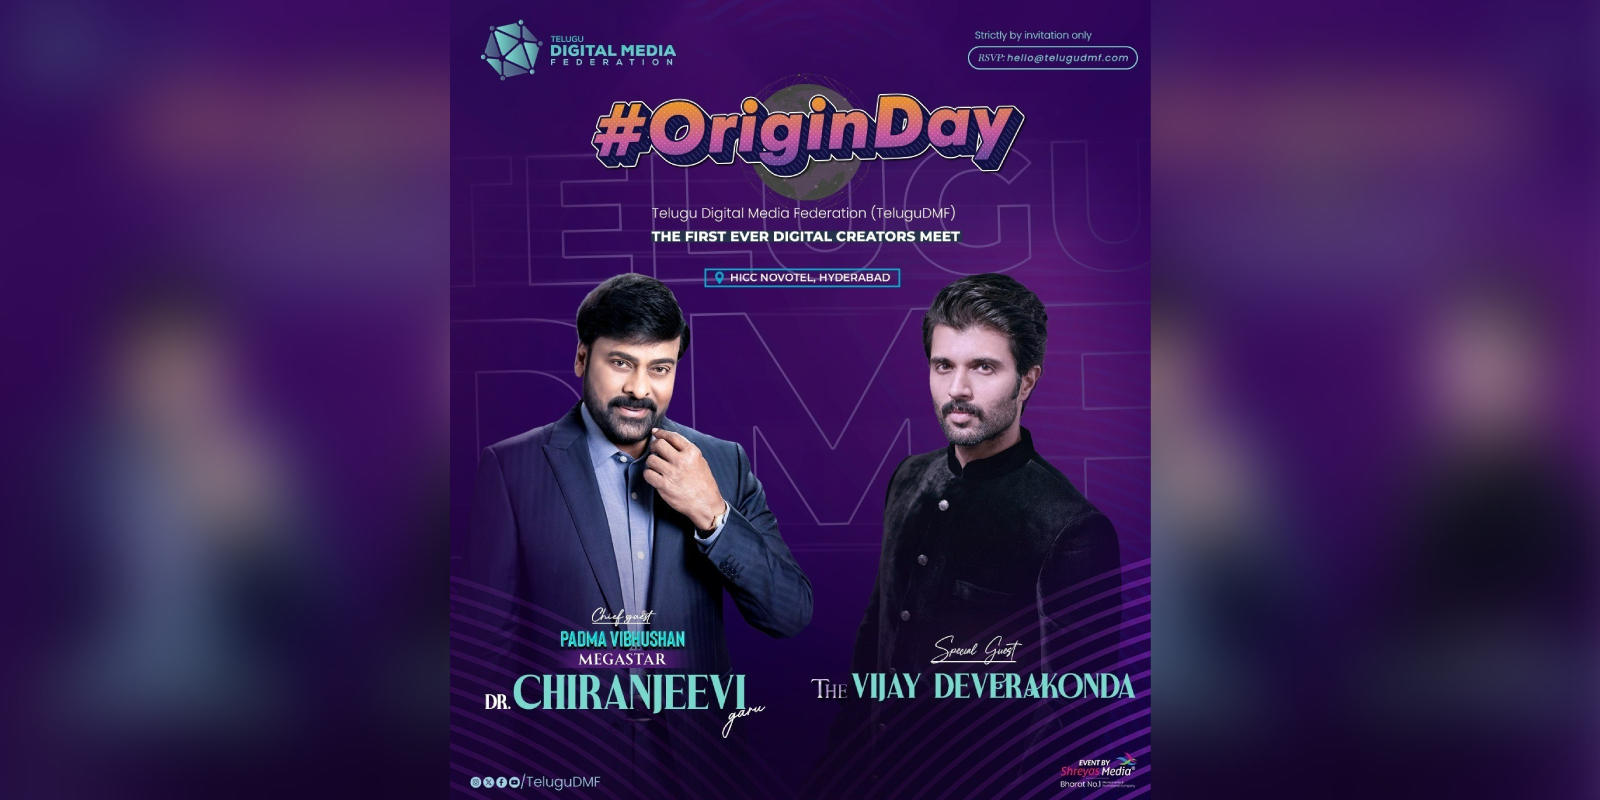 Gallery: Telugu Digital Media Federation hosts Origin Day